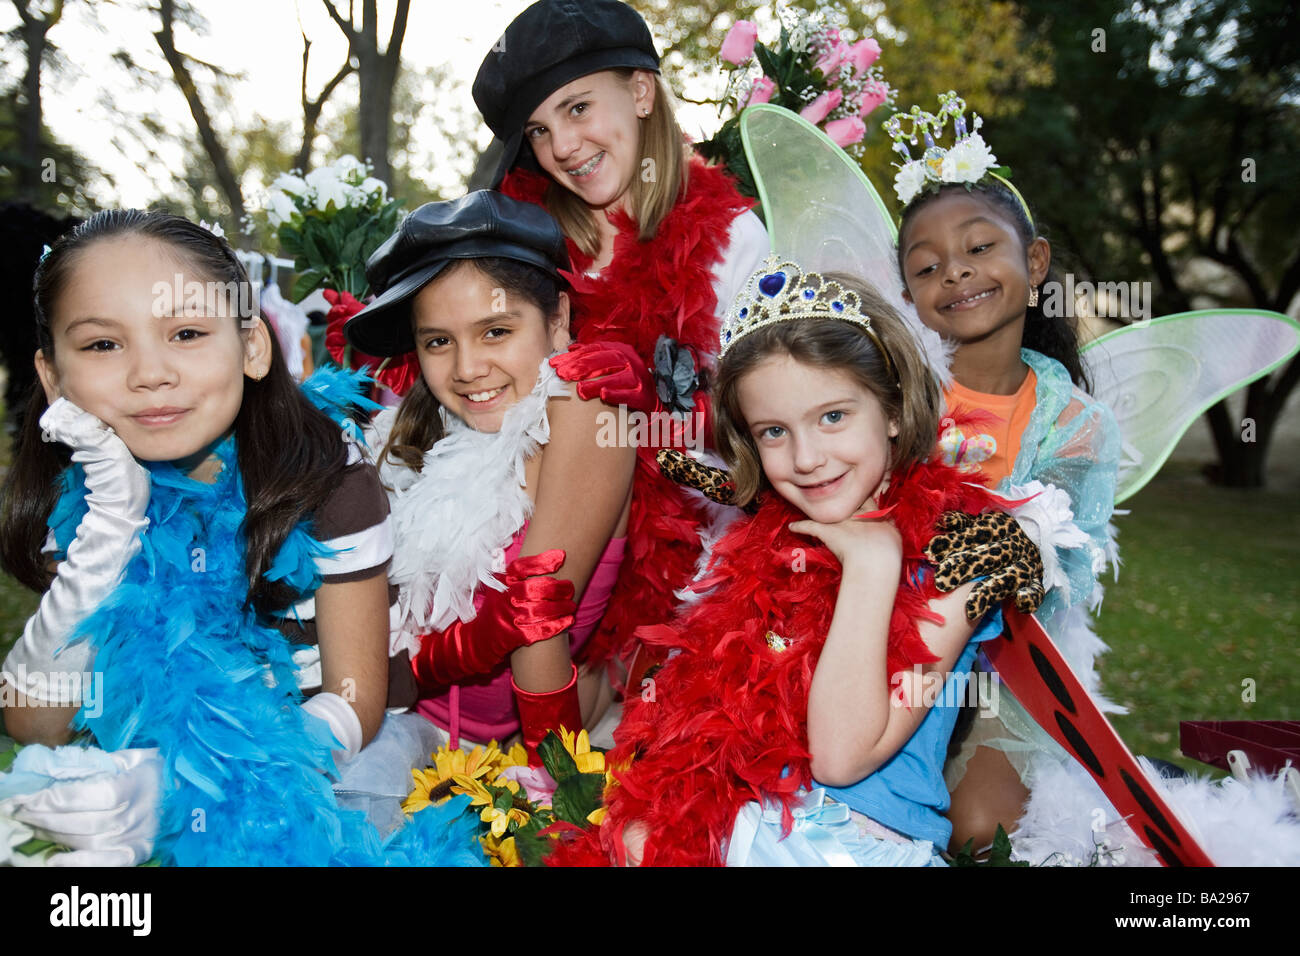 Les filles (7-12) portant des costumes colorés Banque D'Images